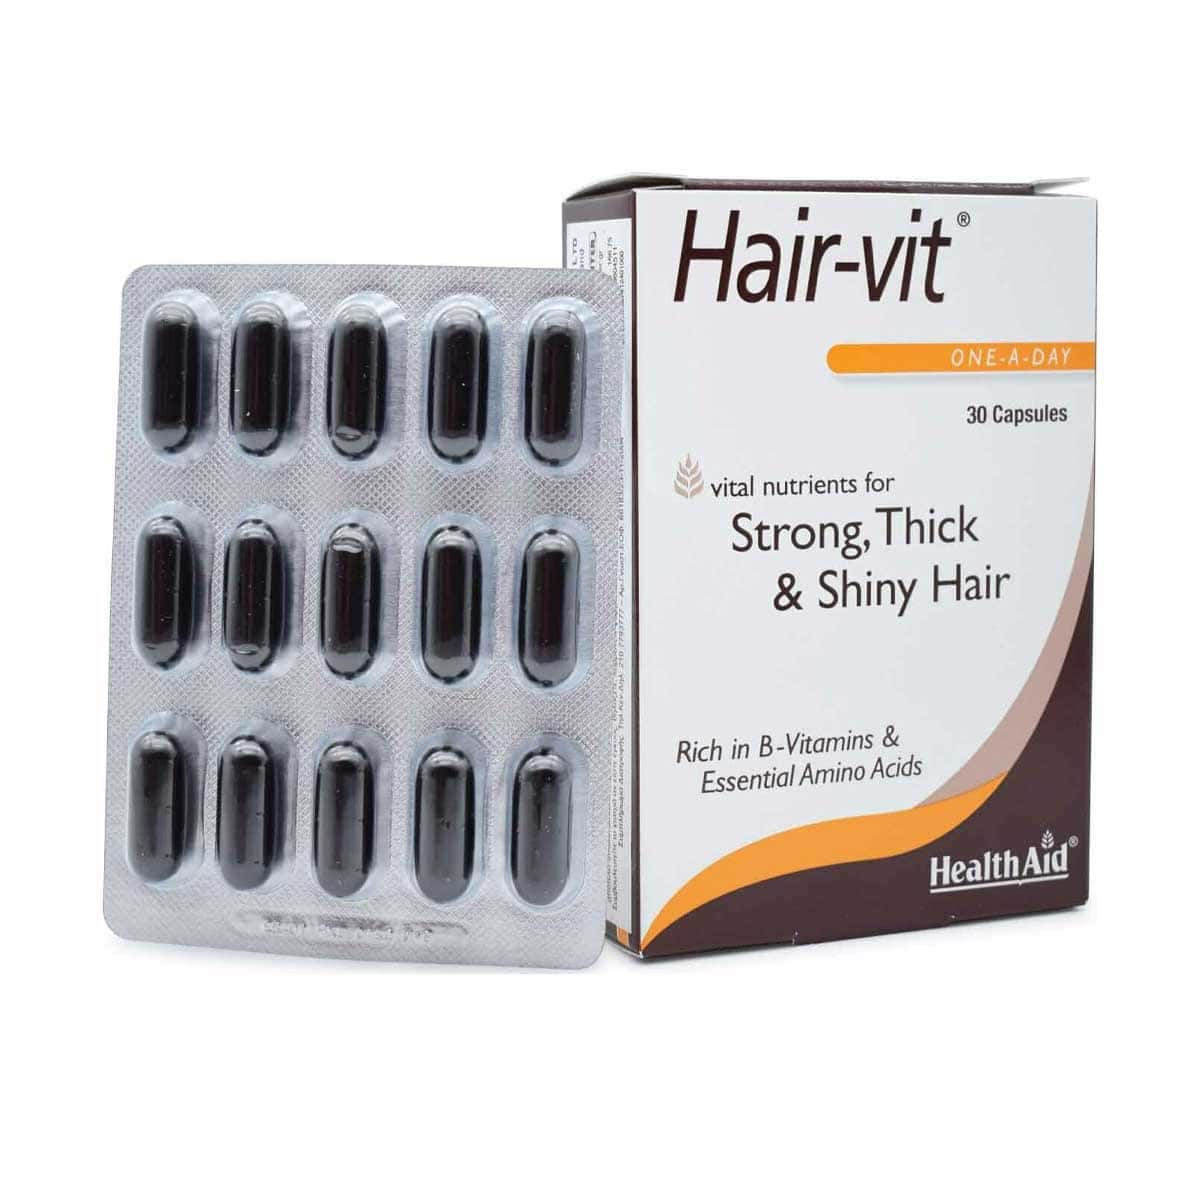 Health-Aid-Hair-Vit-30-kapsoules-5019781000234